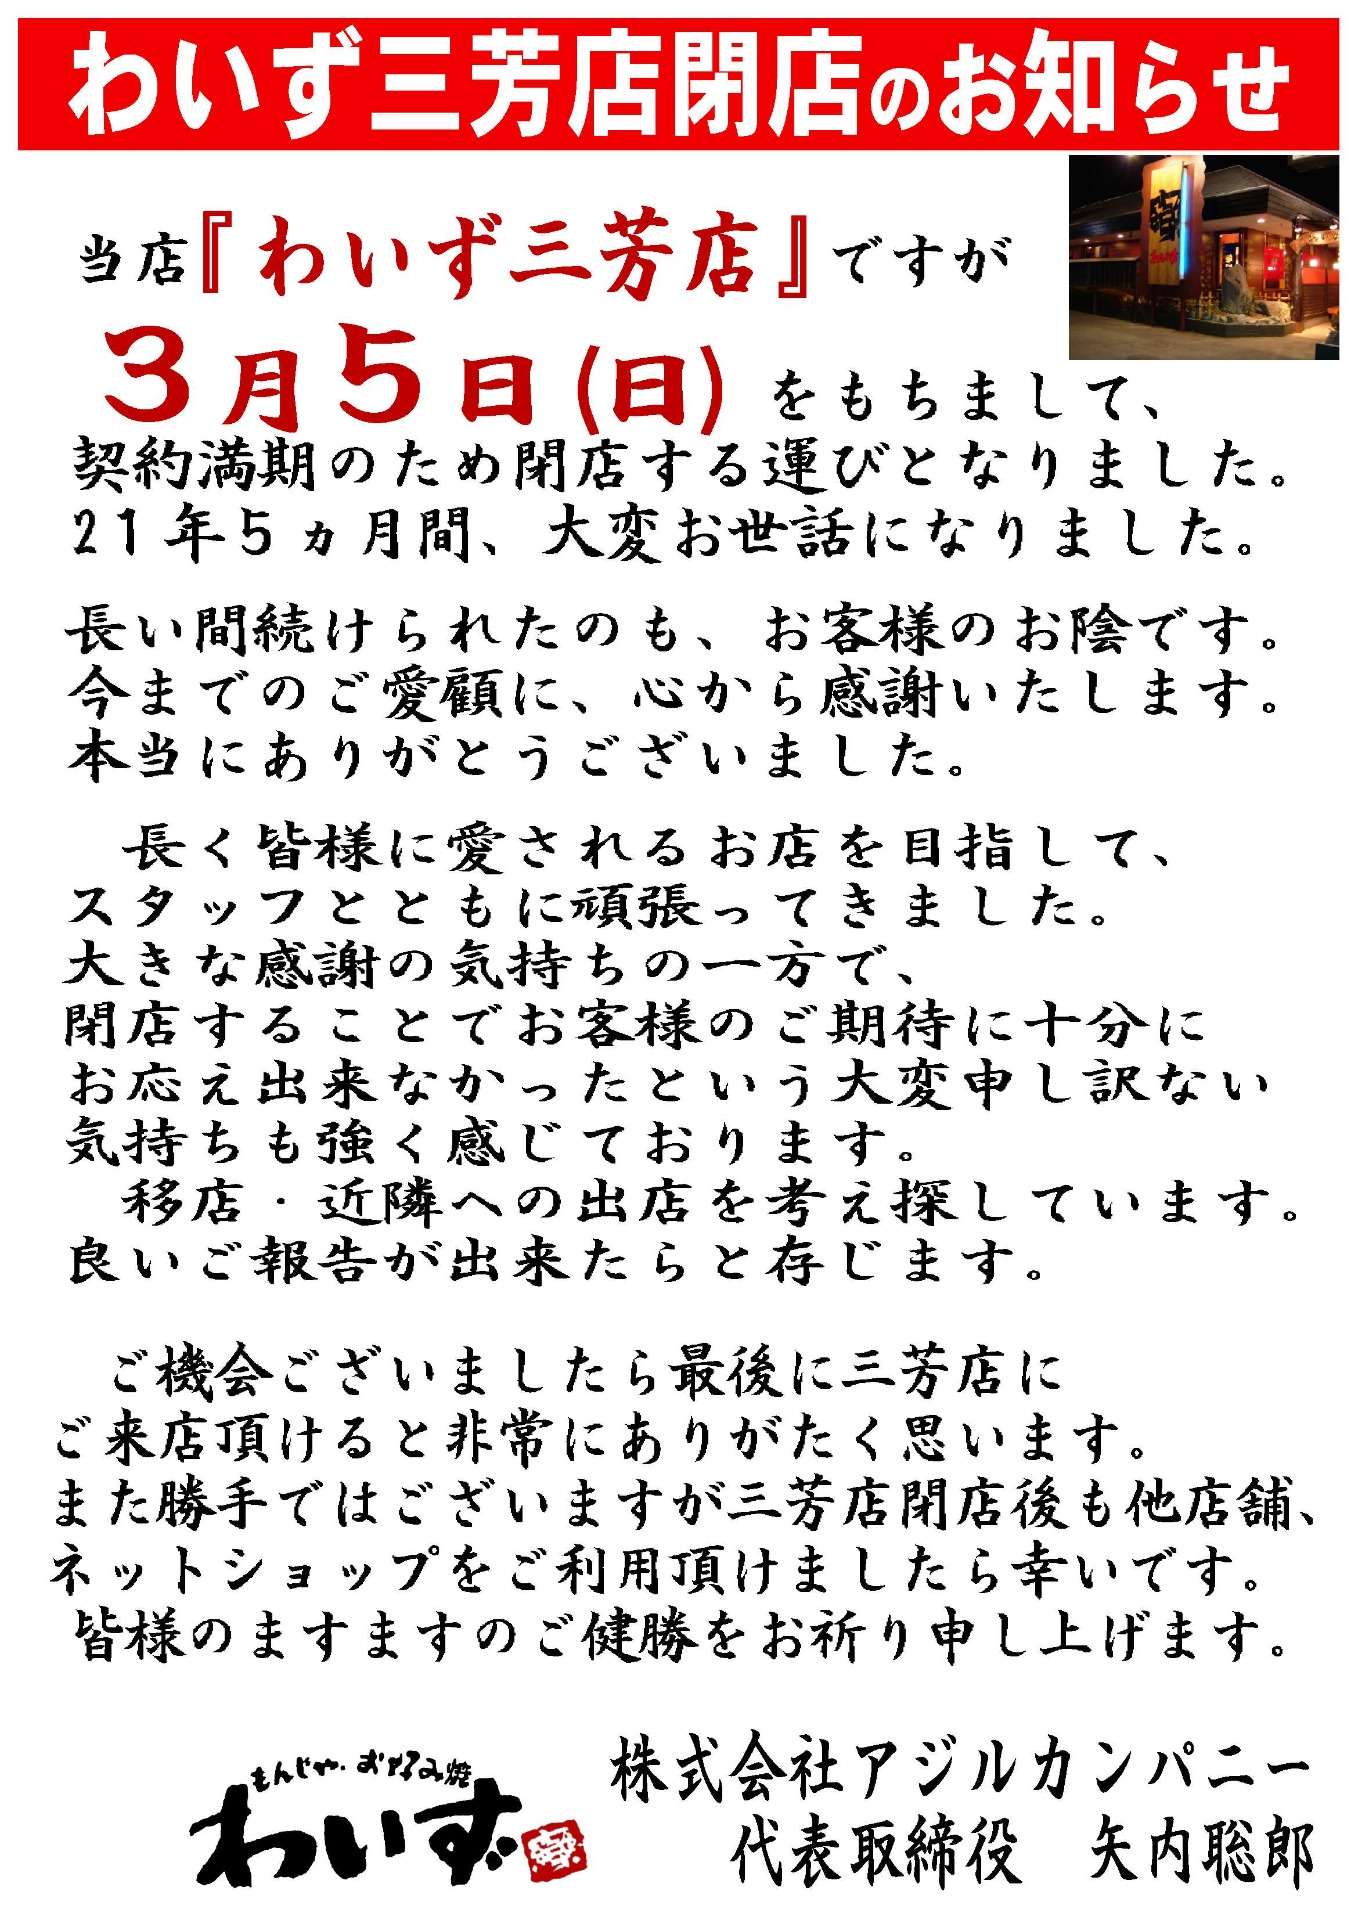 【三芳店】閉店のご案内～3/5(日)